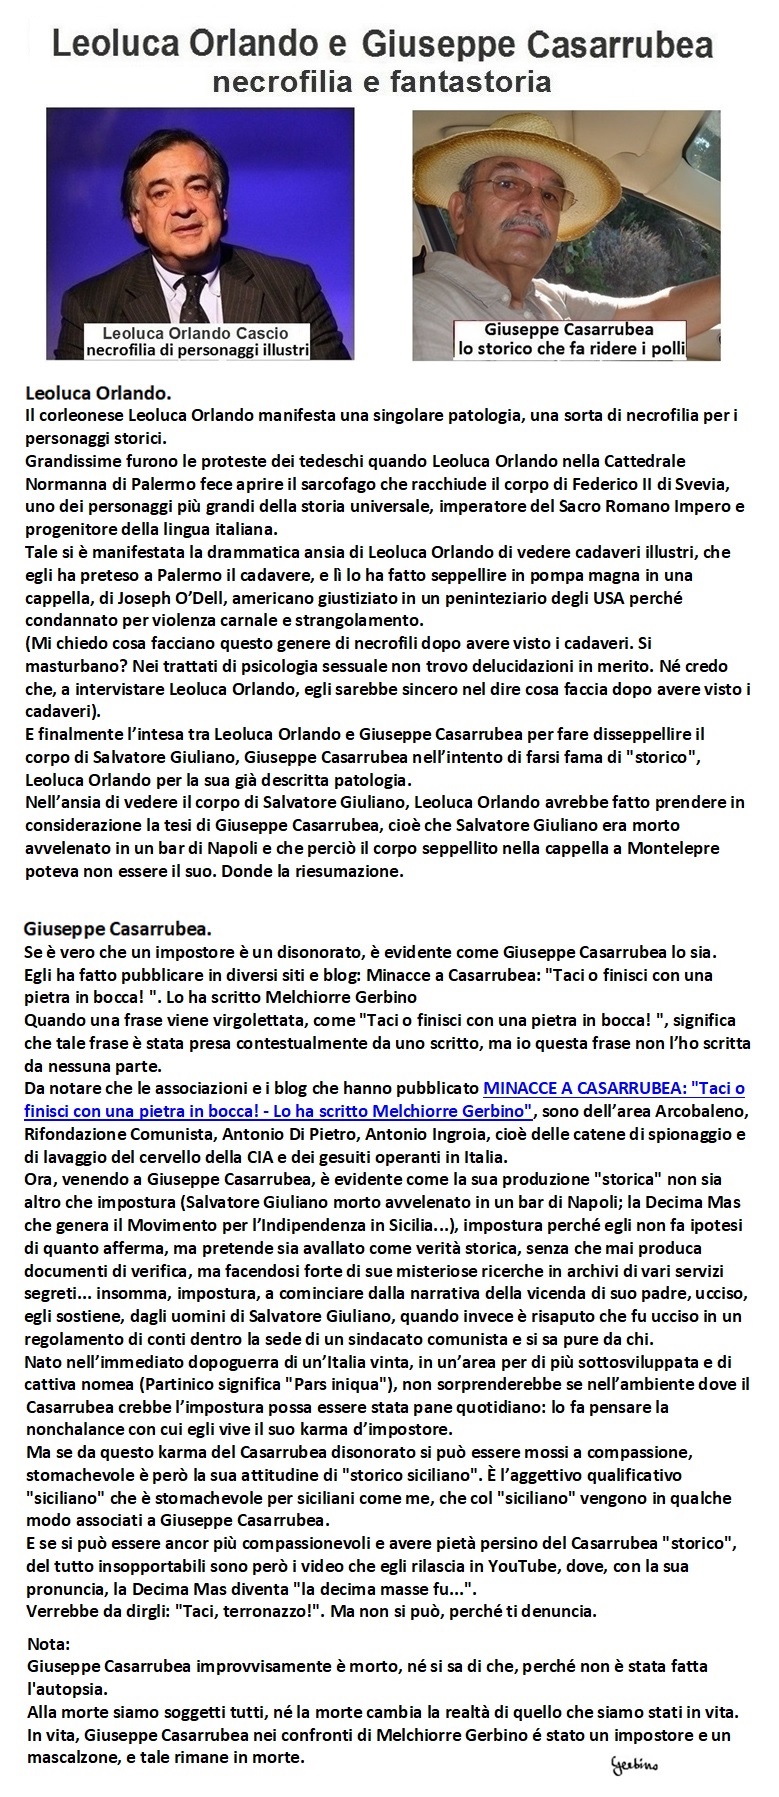 La necrofilia di Leoluca Orlando e la fantastoria di Giuseppe Casarrubea